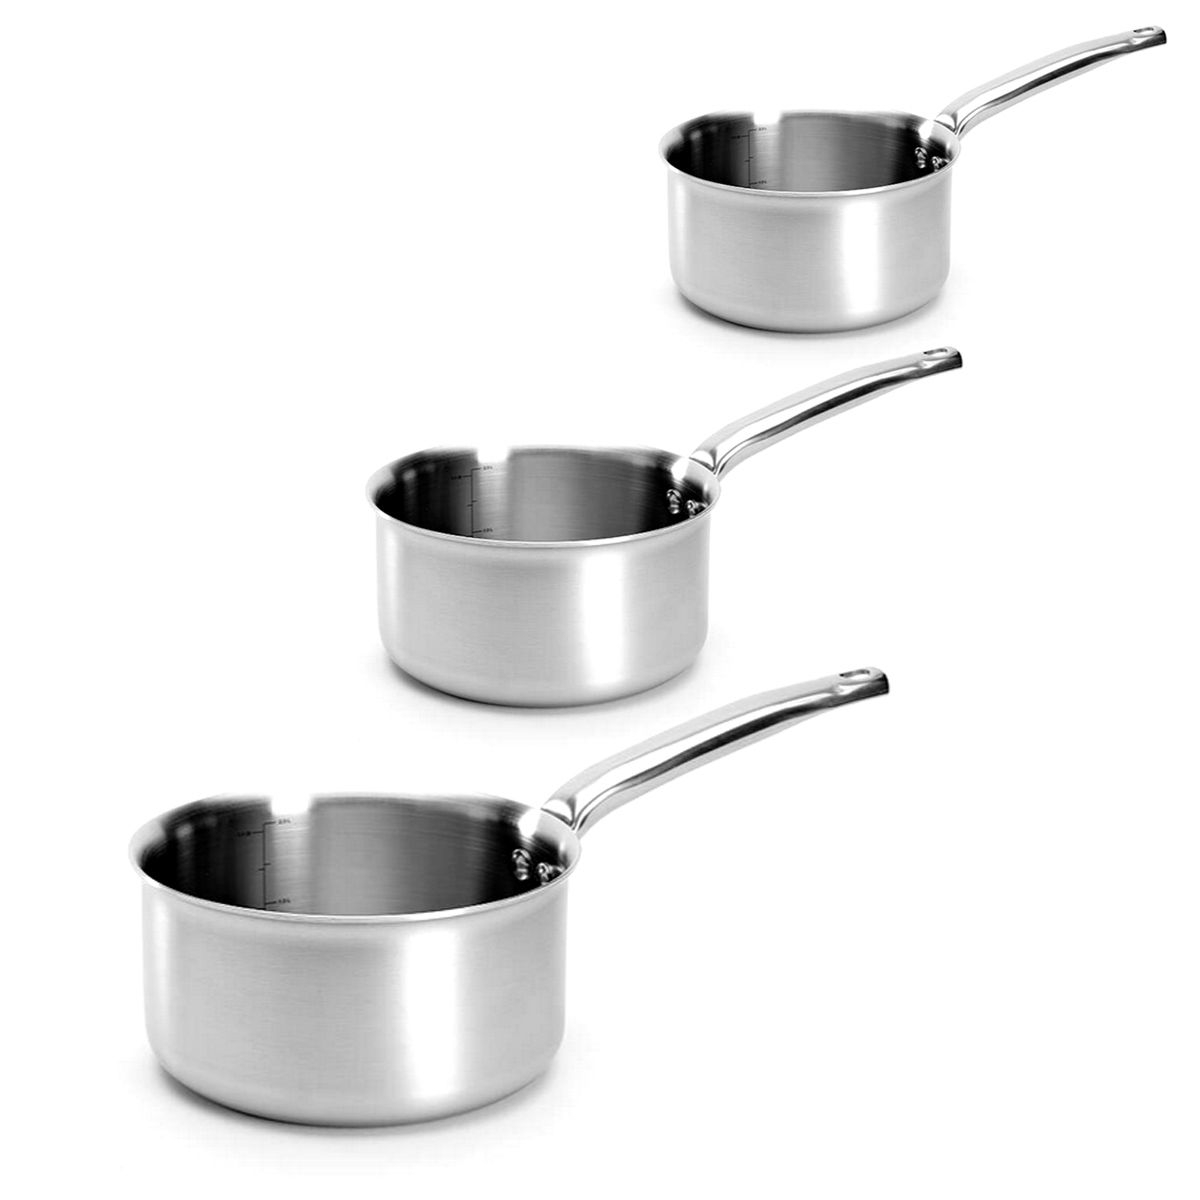 de Buyer - Set of 3 Stainless steel Saucepans - ALCHIMY